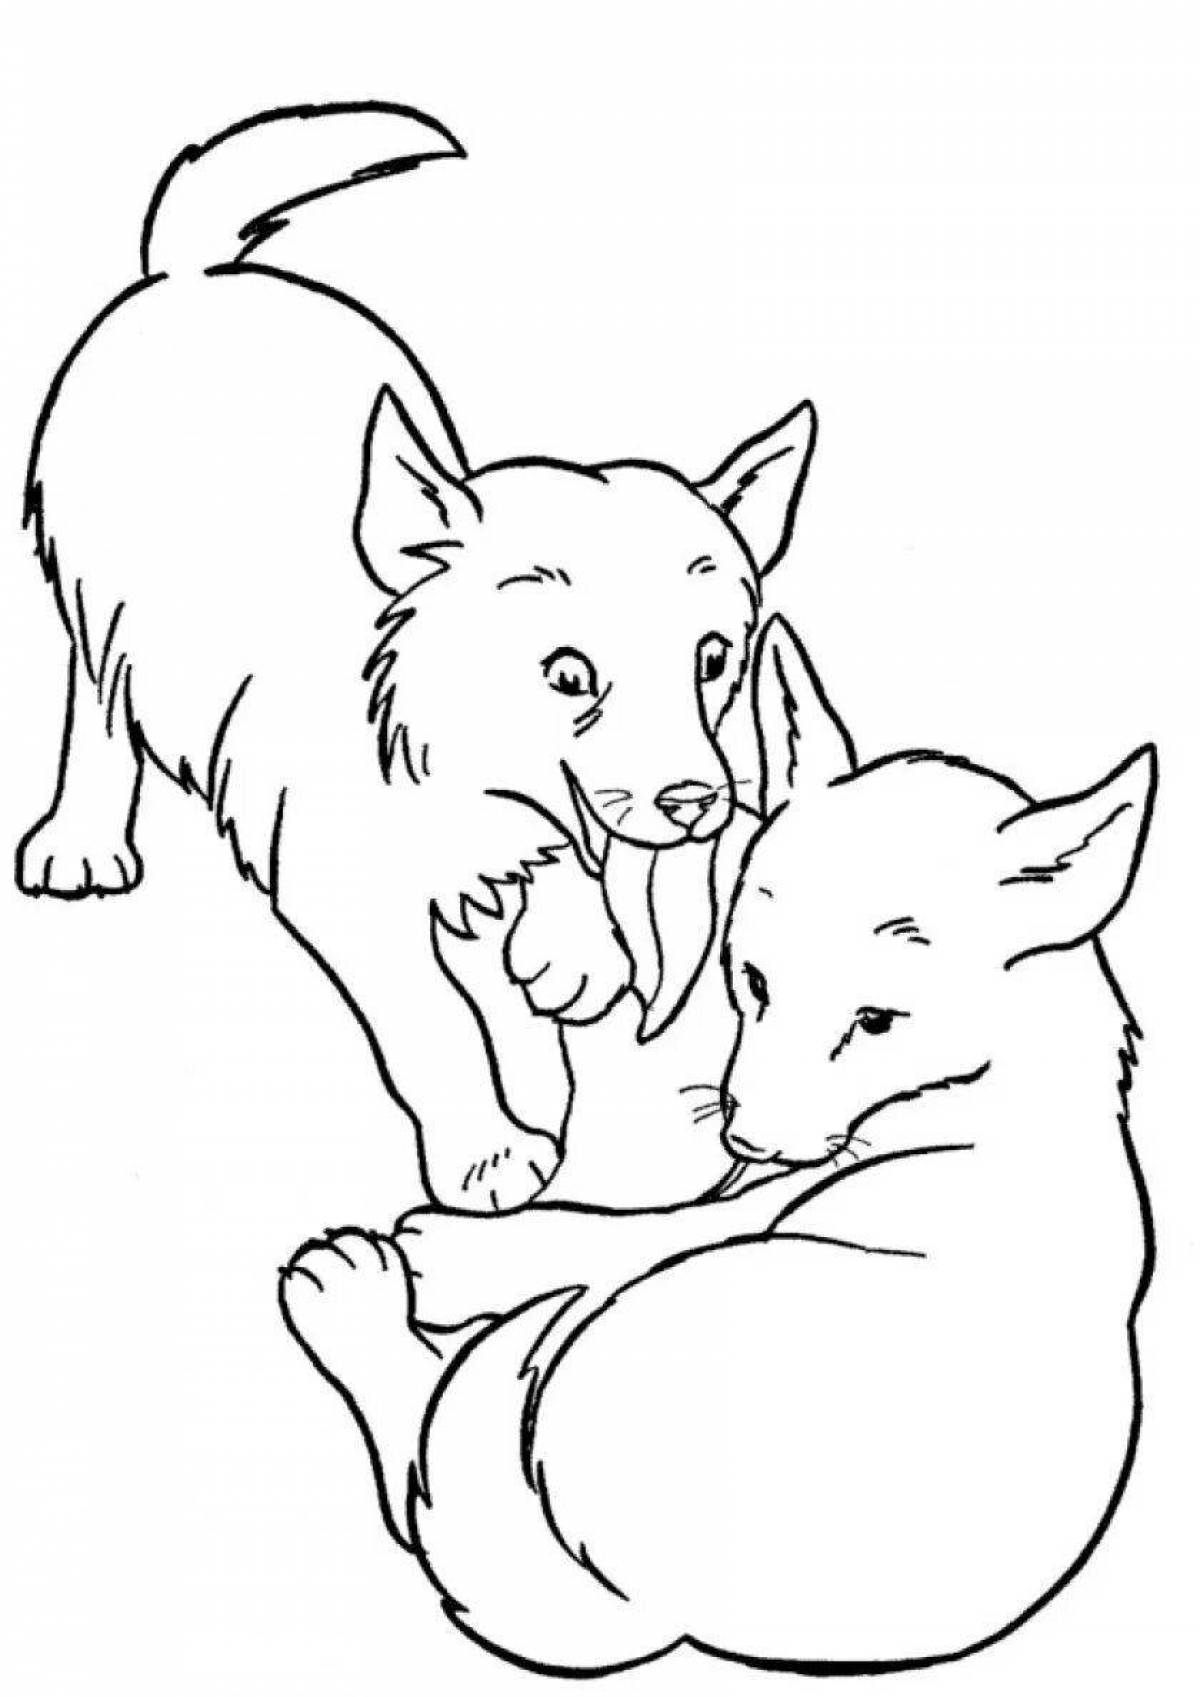 Праздничная раскраска собака и волк